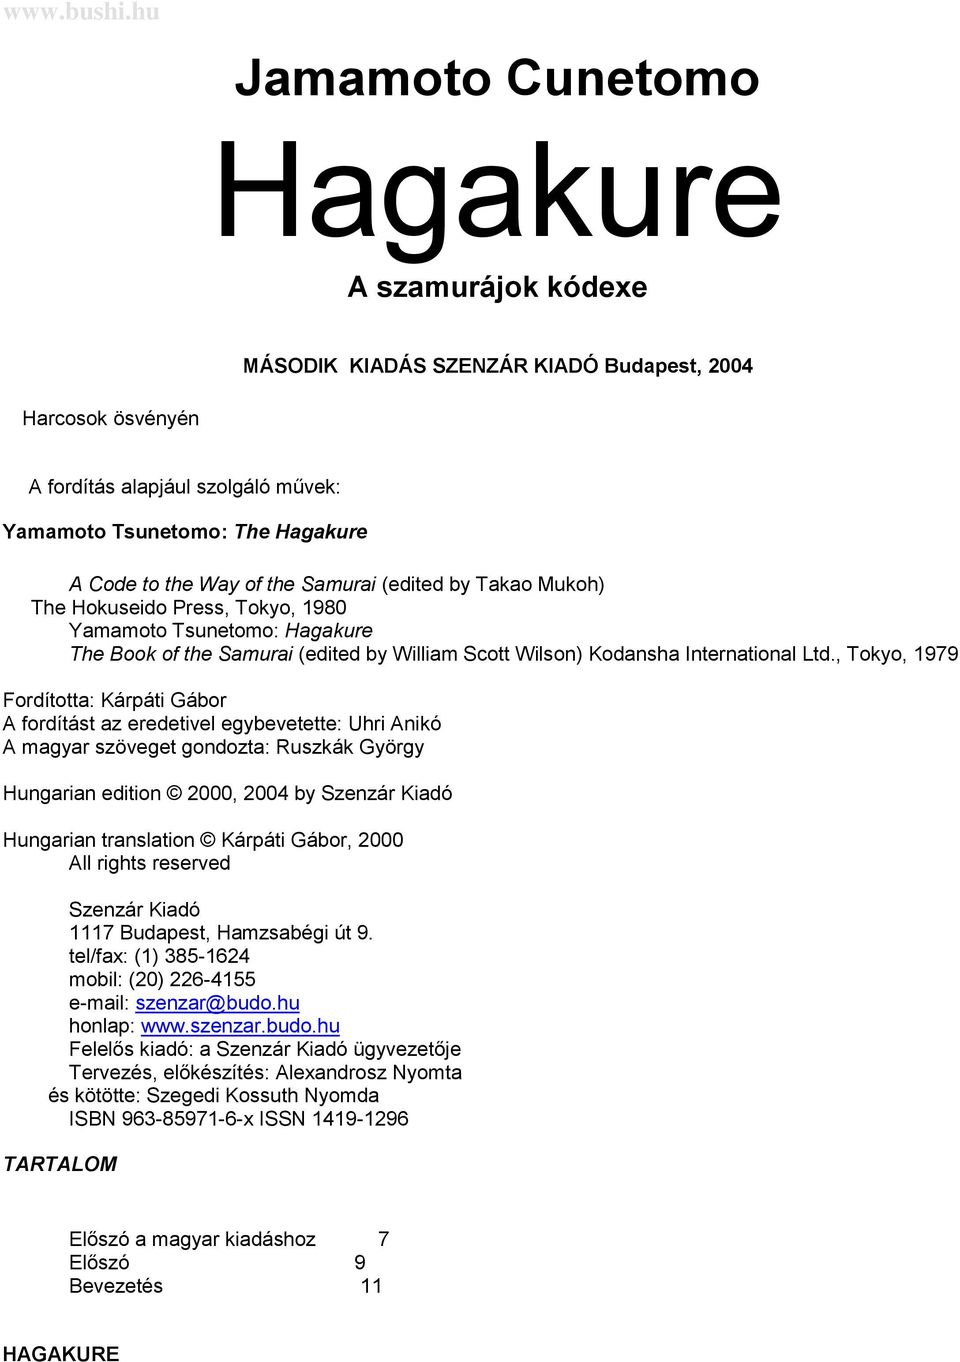 Hagakure A szamurájok kódexe - PDF Ingyenes letöltés